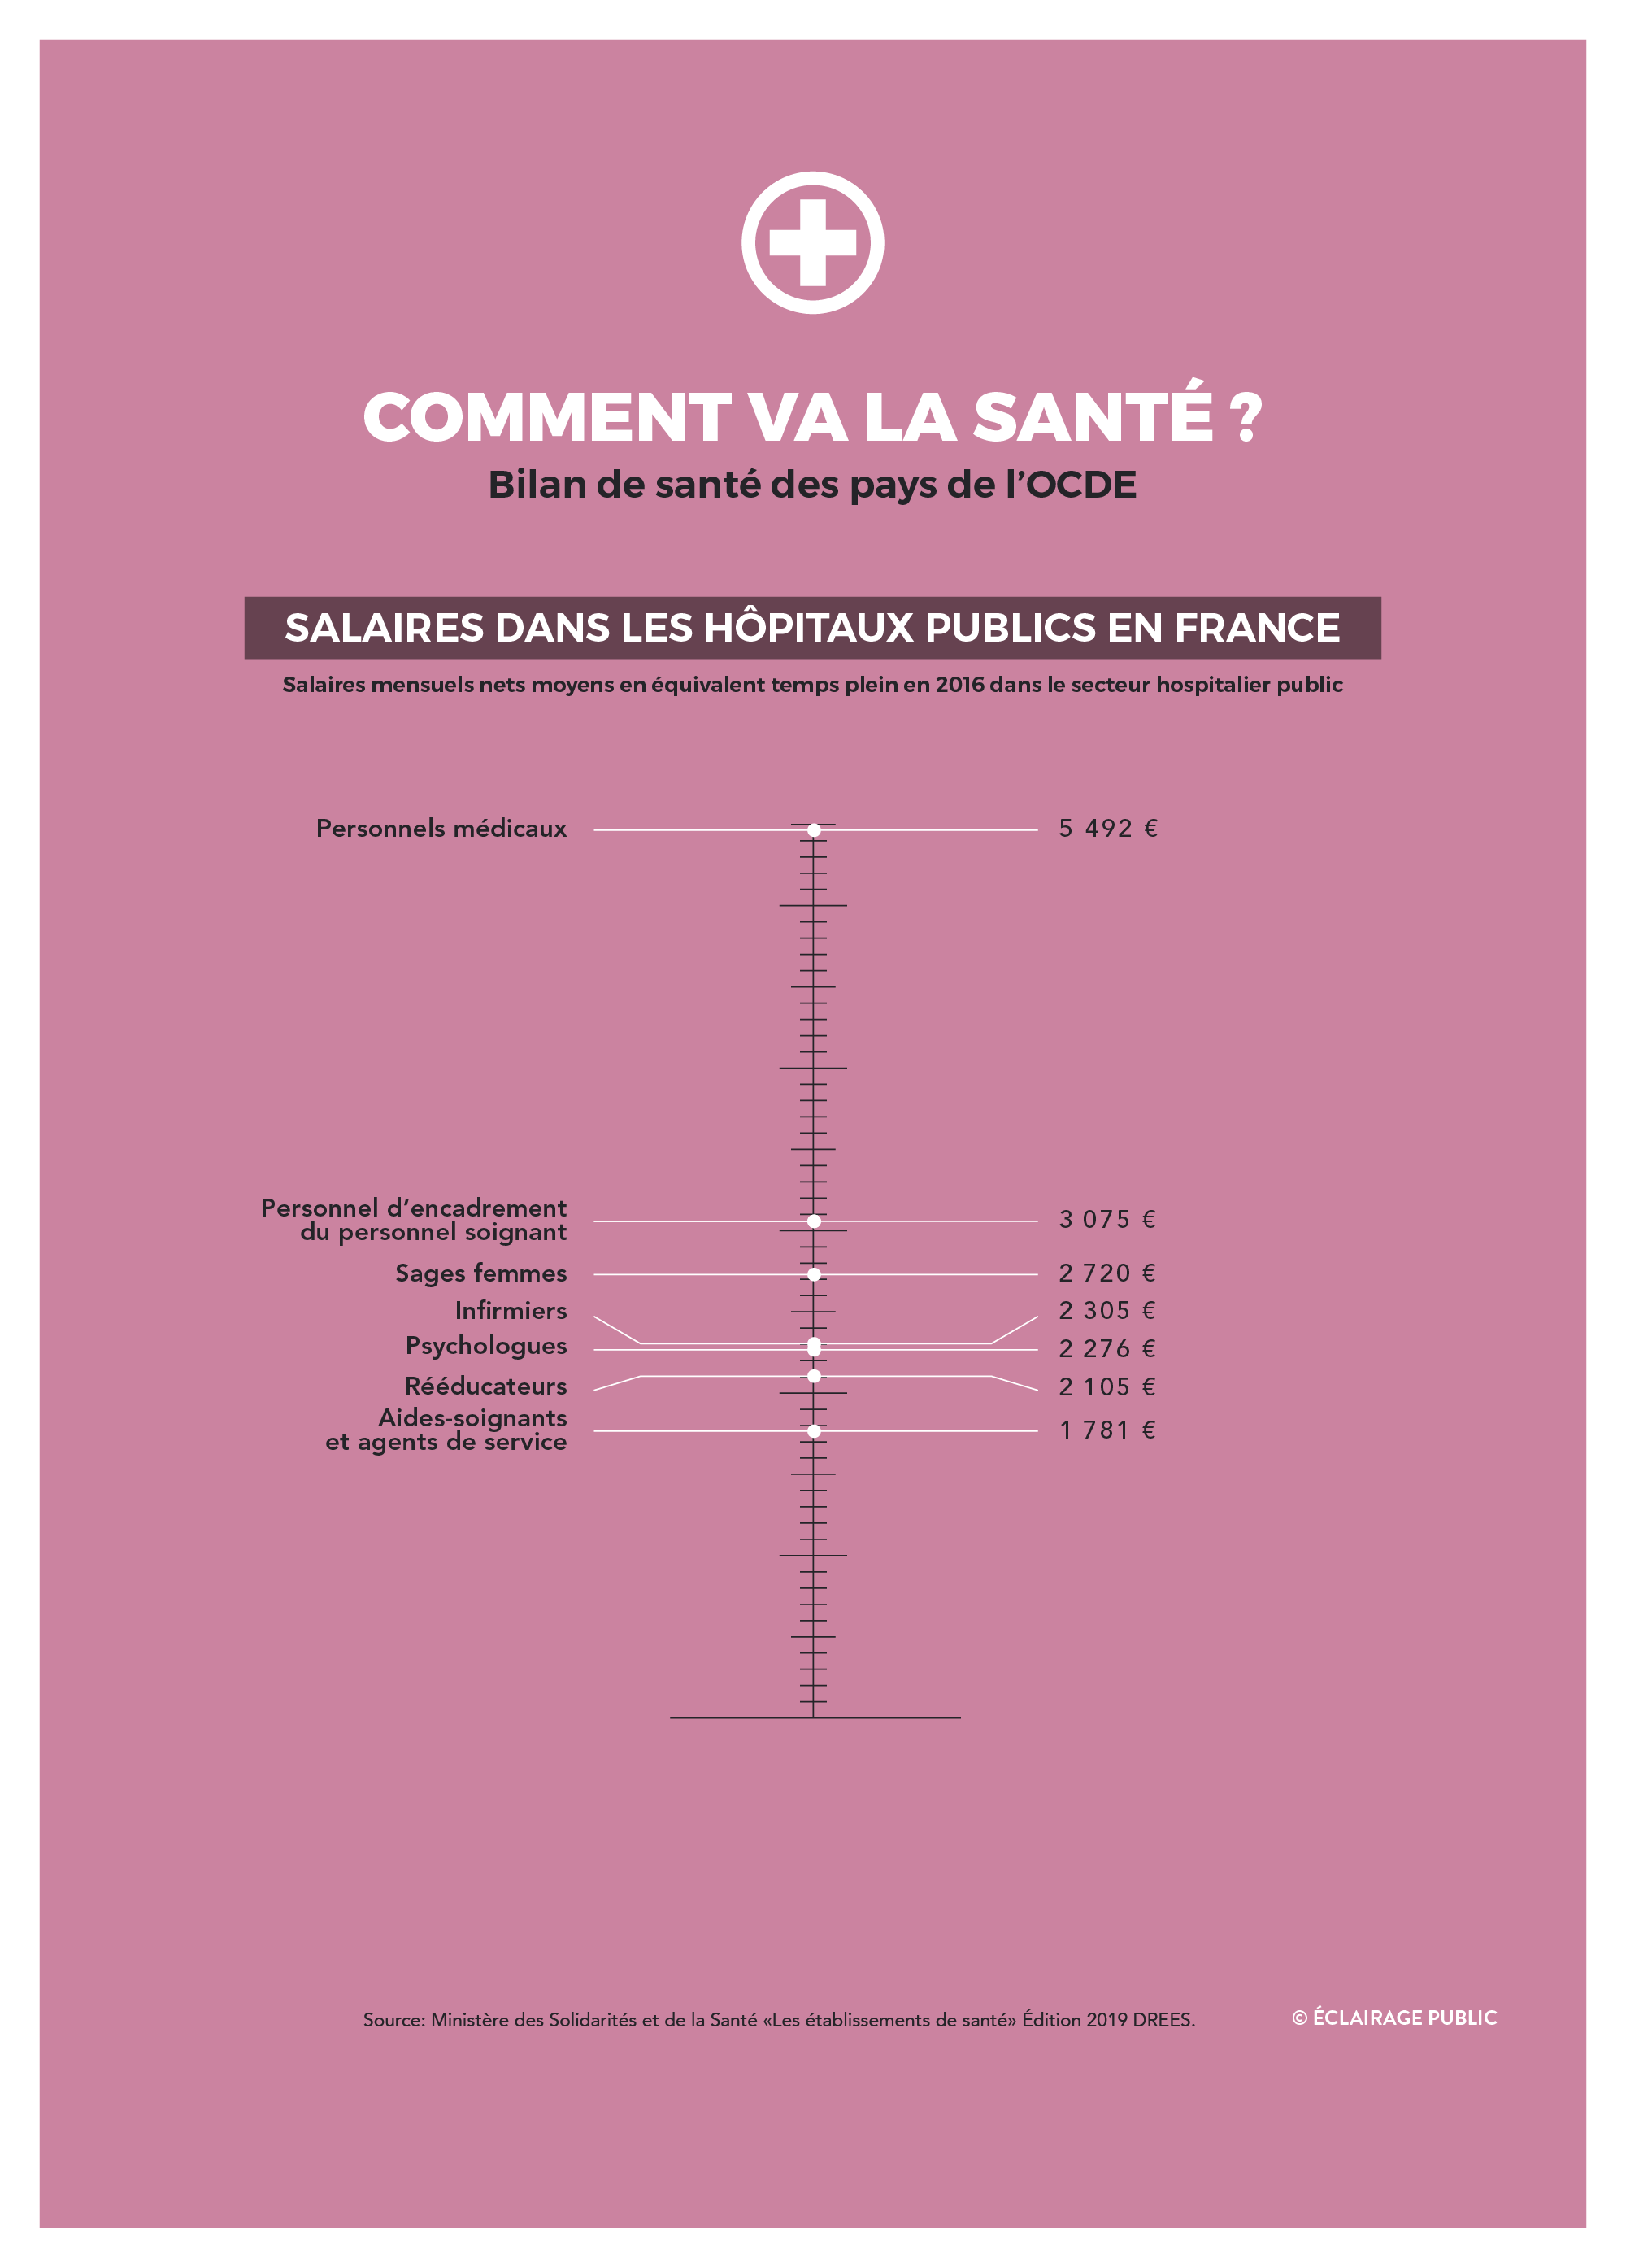 Comment va la santé ? Bilan de santé des pays de l'OCDE - Salaires dans les hôpitaux publics en France © Data visualisation : ÉCLAIRAGE PUBLIC